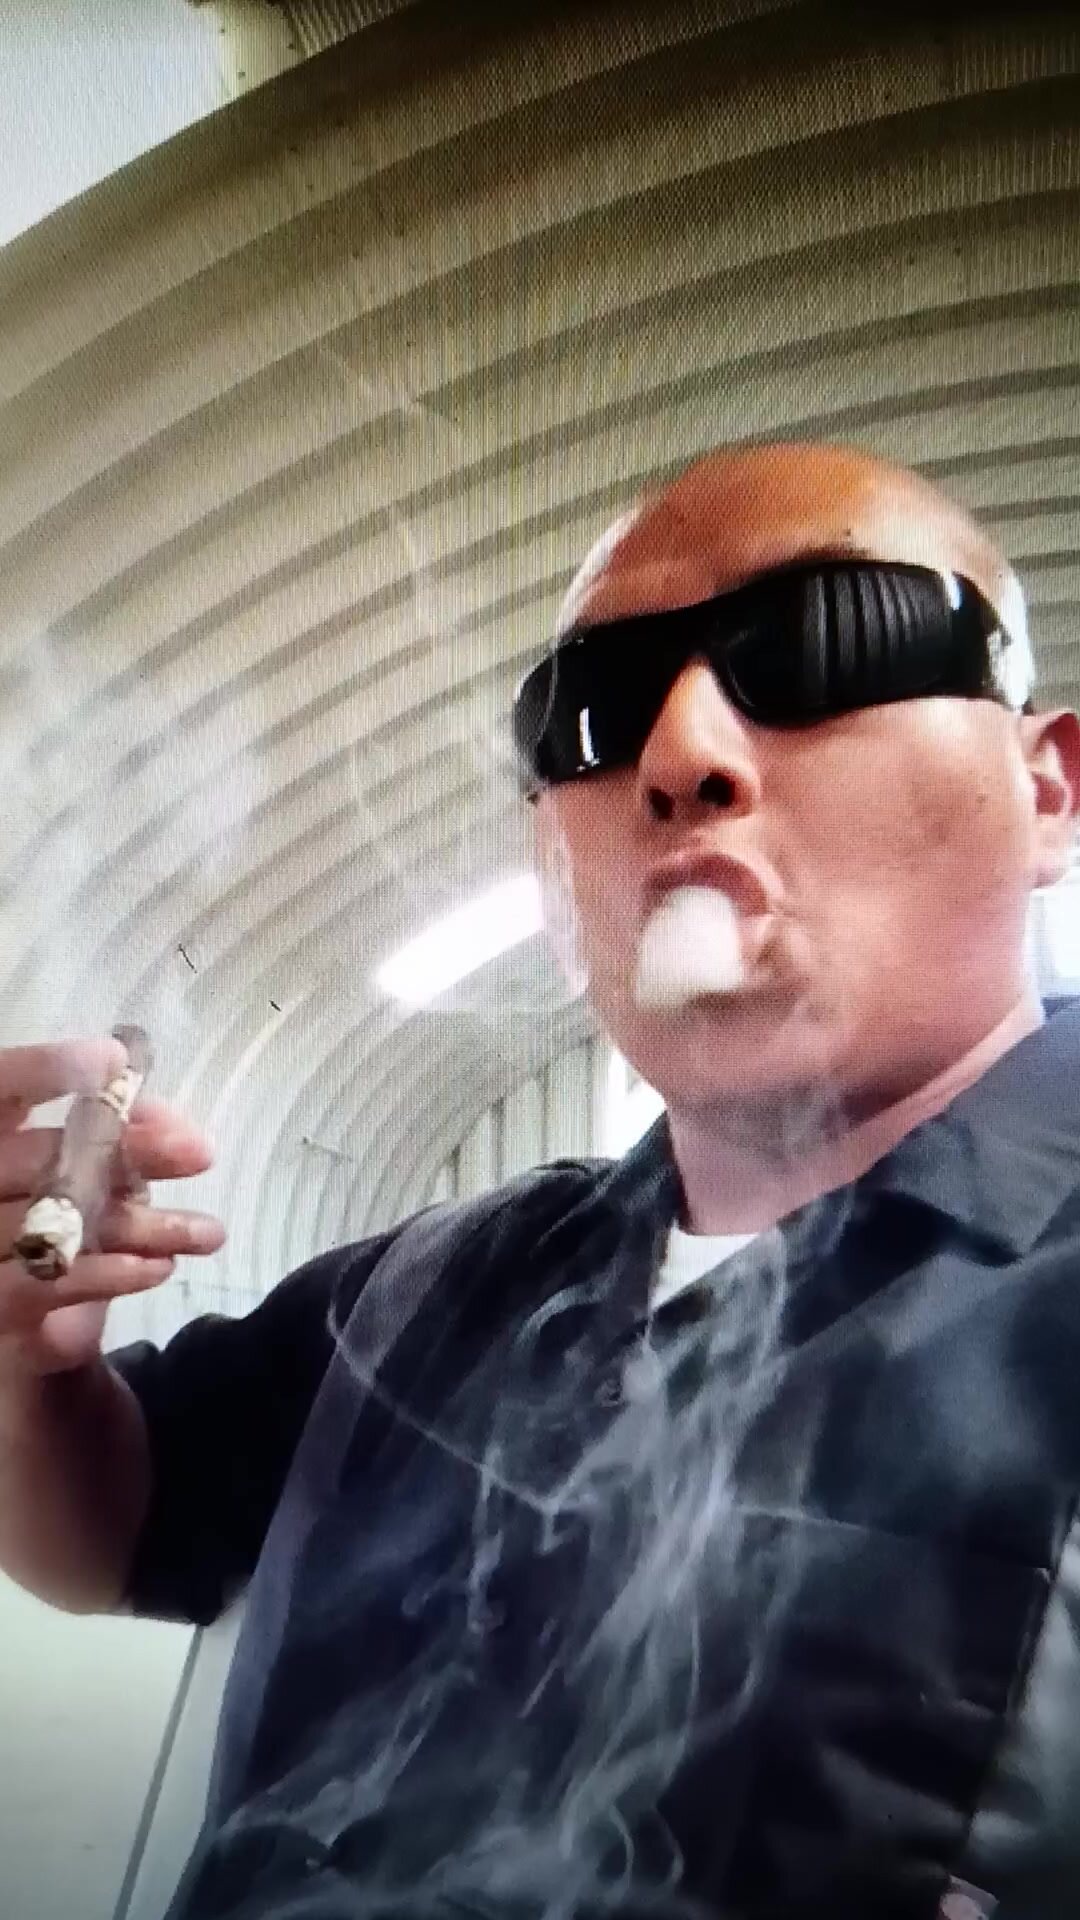 Mafia boss cigar rings